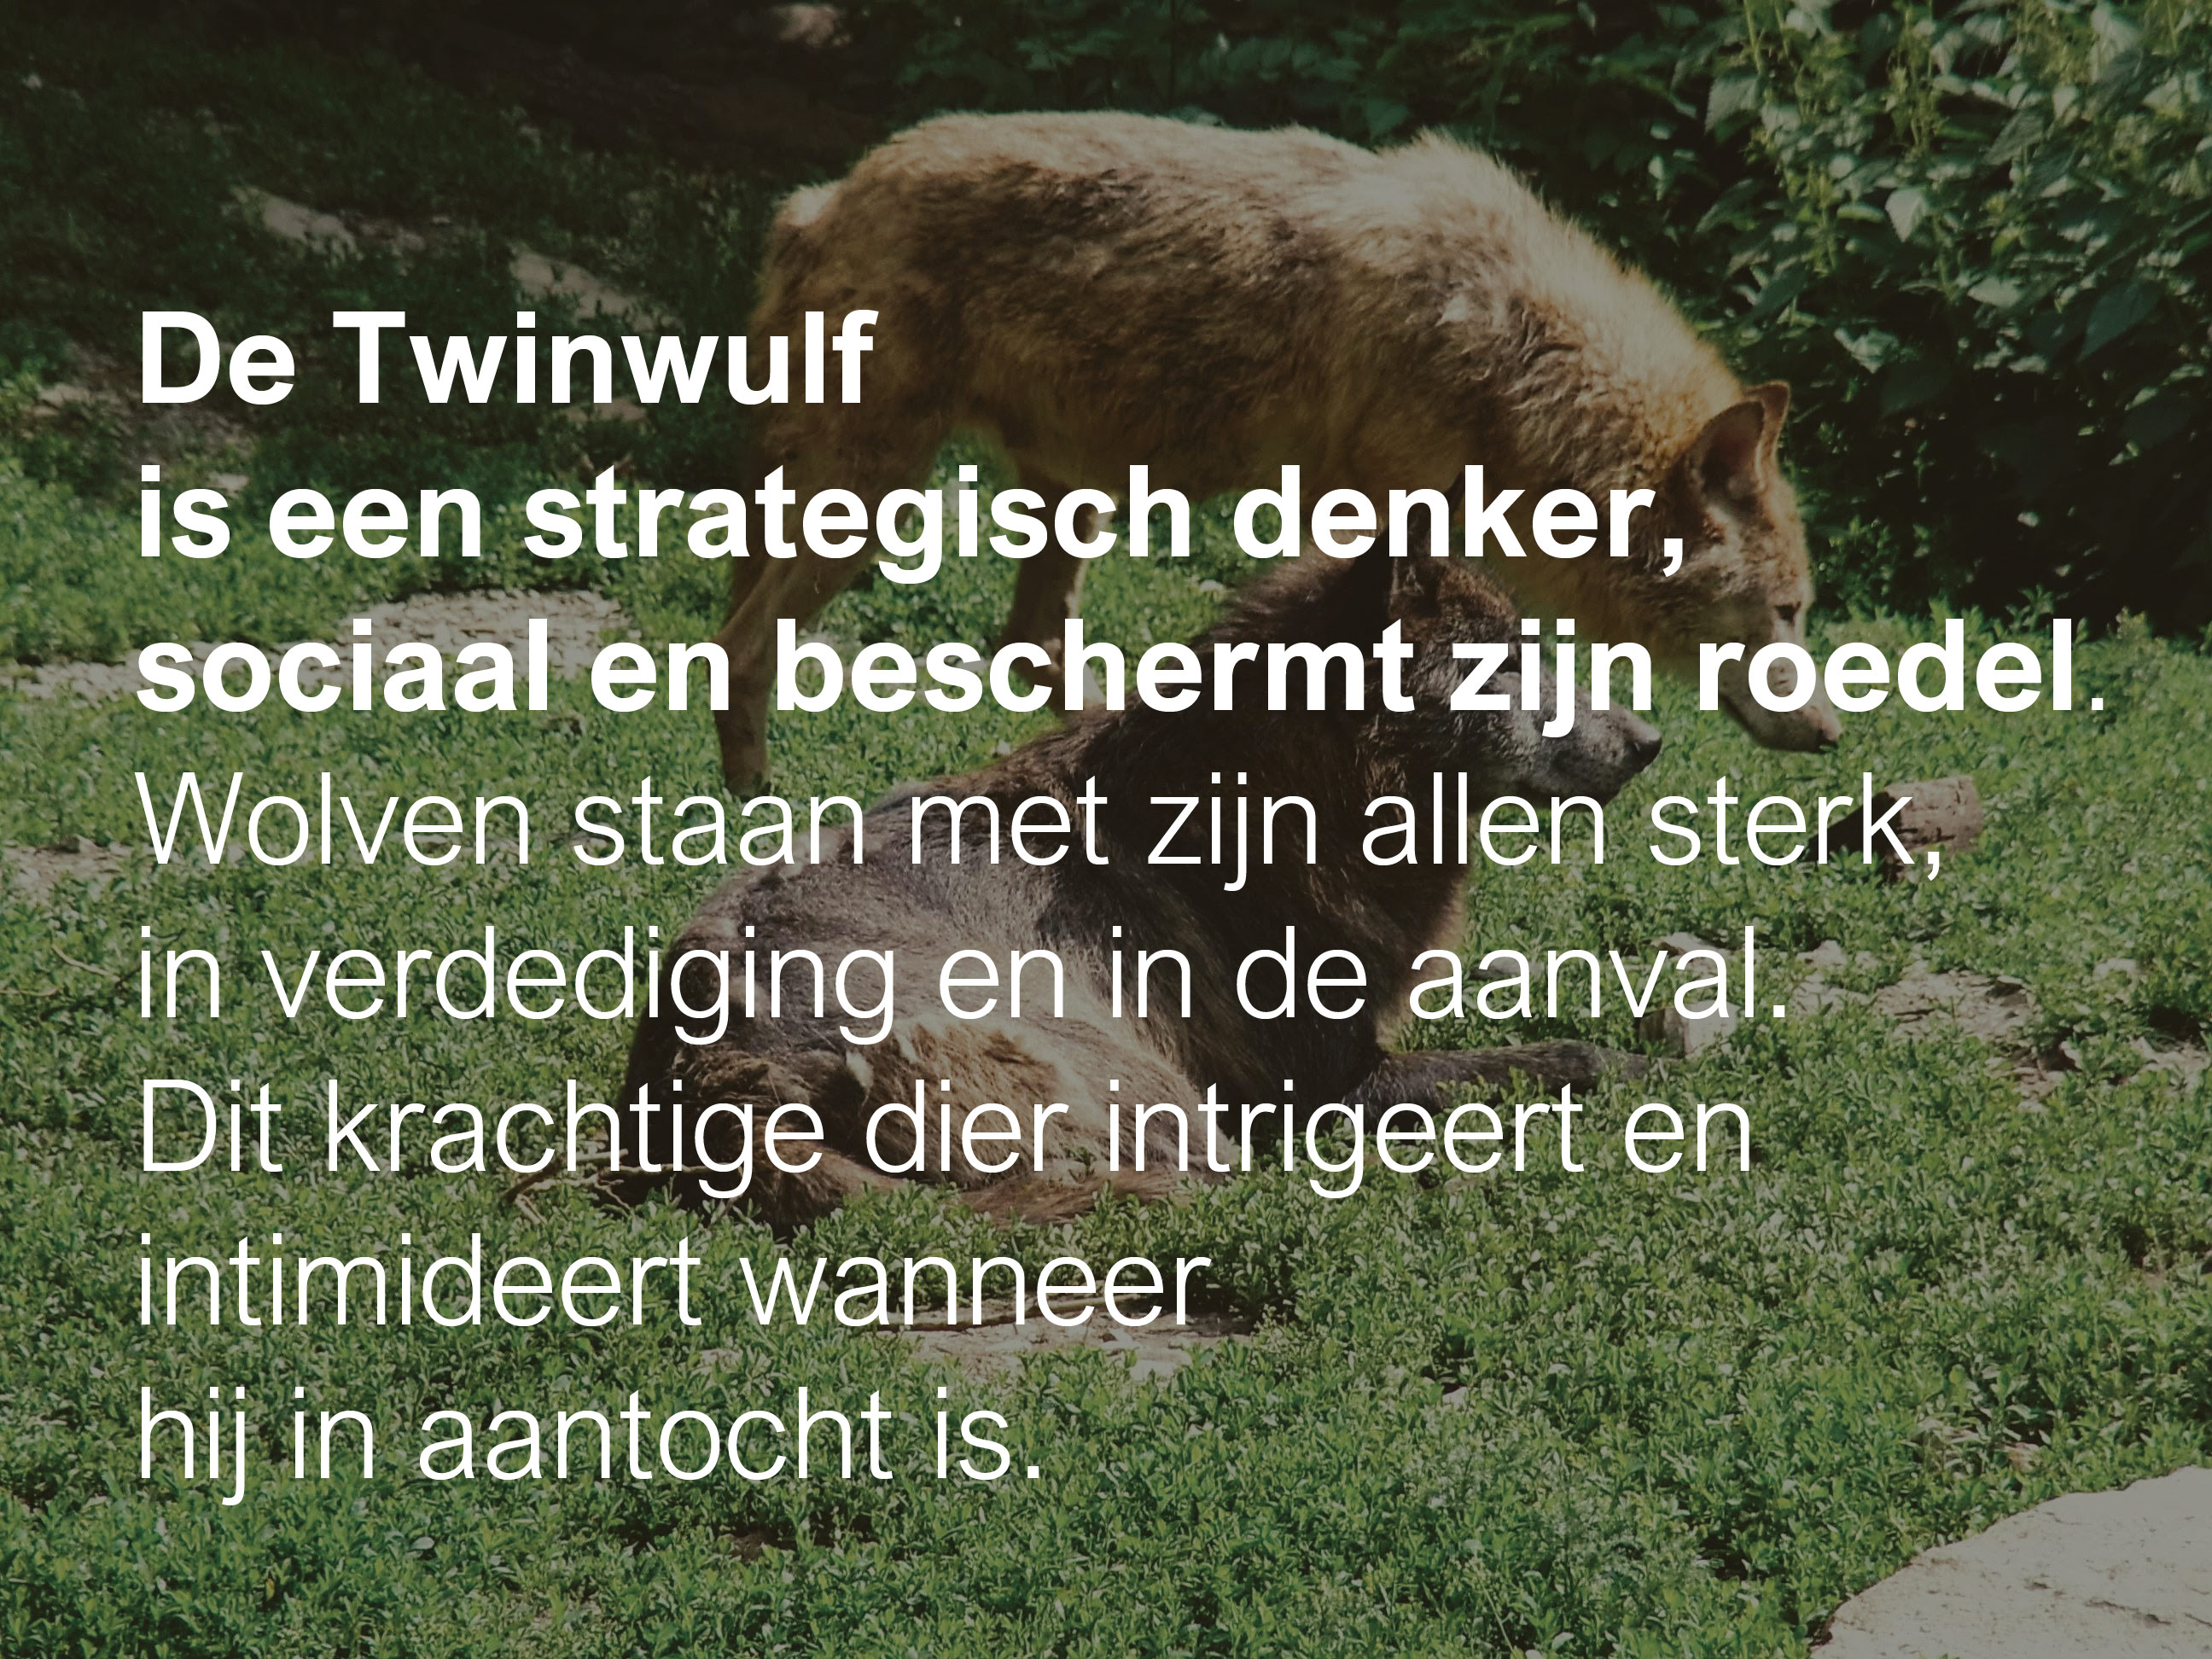 De Twinwulf is een strategisch denker, sociaal en beschermt zijn roedel. Wolven staan met zijn allen sterk, in bescherming en in de aanval. Dit krachtige dier intrigeert en intimideert wanneer hij in aantocht is.